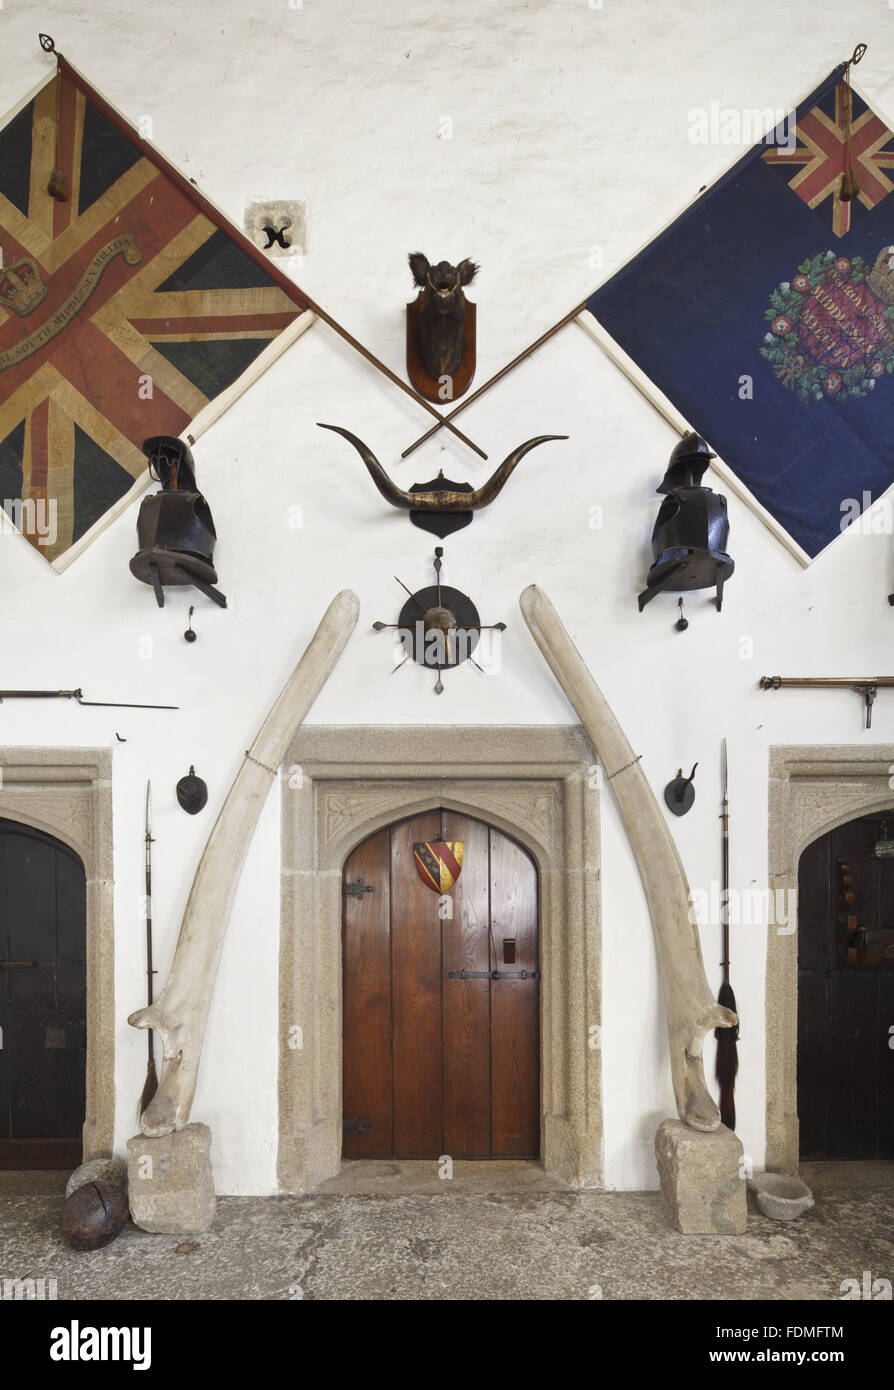 Ein Wal Kieferknochen Flanke das Tor zum Osten Wand in der Halle am Cotehele, Cornwall. Die beiden großen Farben gehören zu den 4. (Royal South Middlesex) Miliz, die von einem Mitglied der Familie Edgcumbe während der napoleonischen Kriege befohlen wurde. Stockfoto